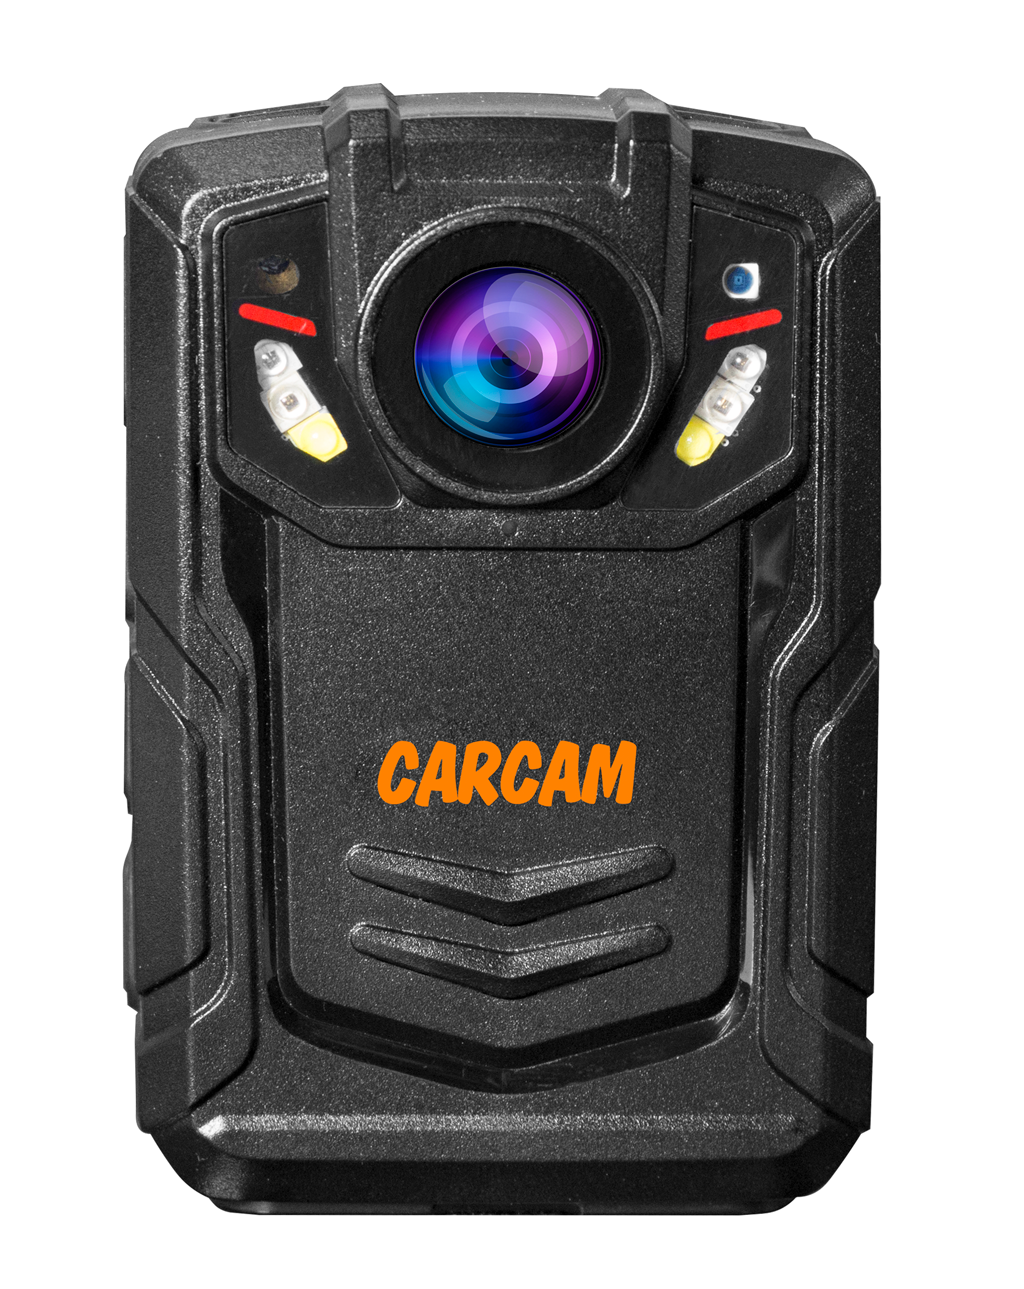 Персональный Quad HD видеорегистратор  CARCAM COMBAT 2S/4G 32GB персональный видеорегистратор carcam combat 2s pro 128gb